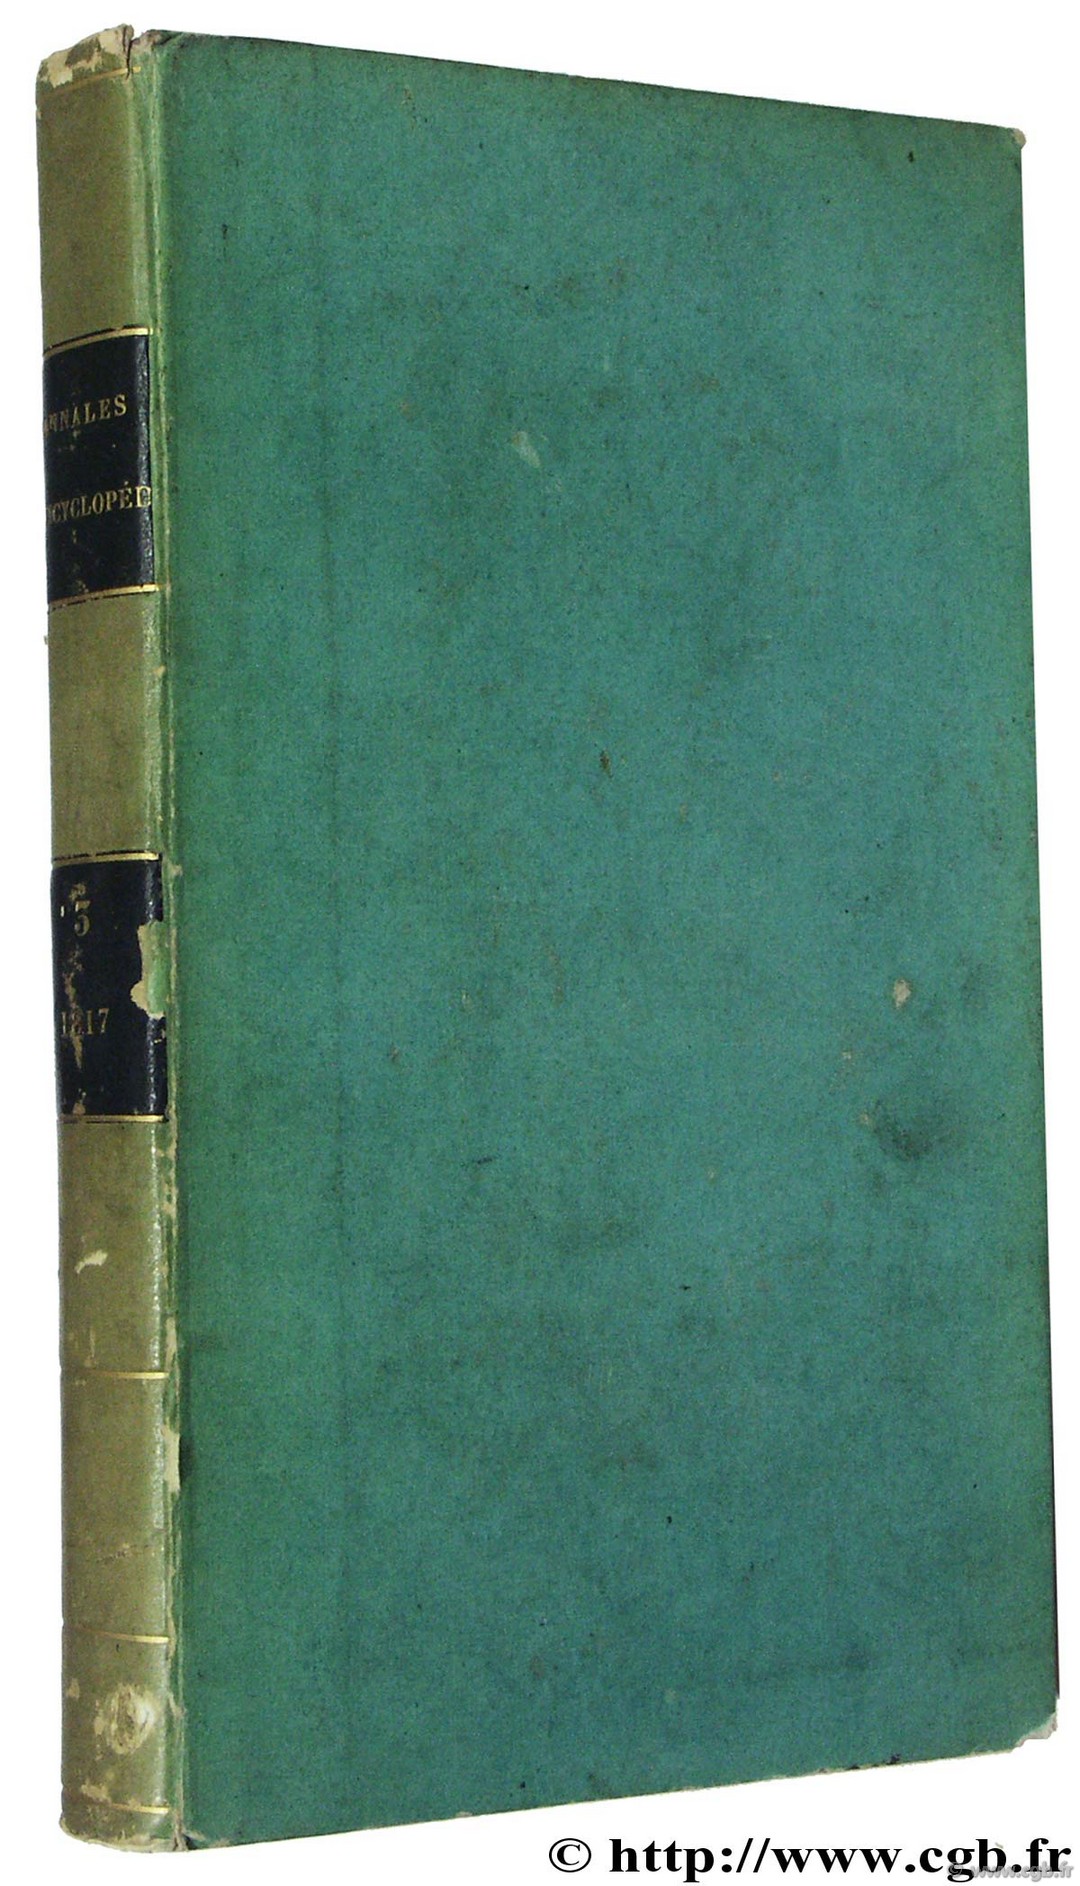 Annales encyclopédiques, année 1817 MILLIN A.-L.